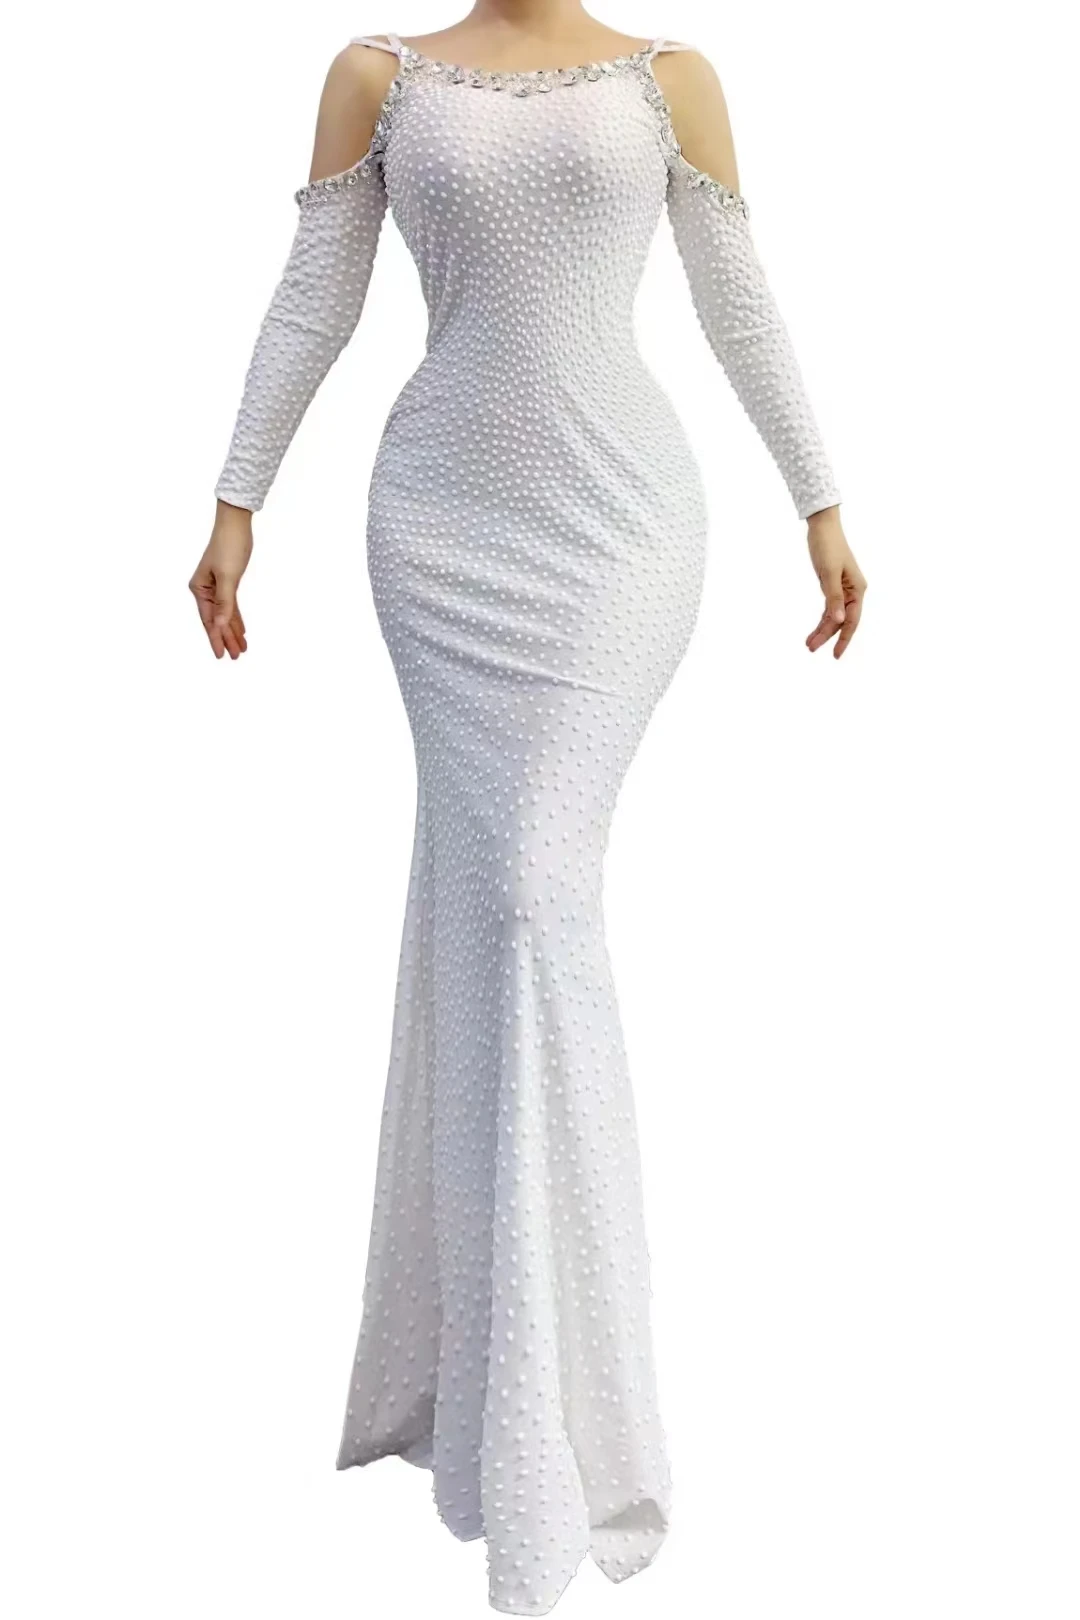 

Женское облегающее платье с открытыми плечами, элегантное белое платье с длинным рукавом, красное Клубное платье знаменитости CarpetShow, вечерняя одежда, A438